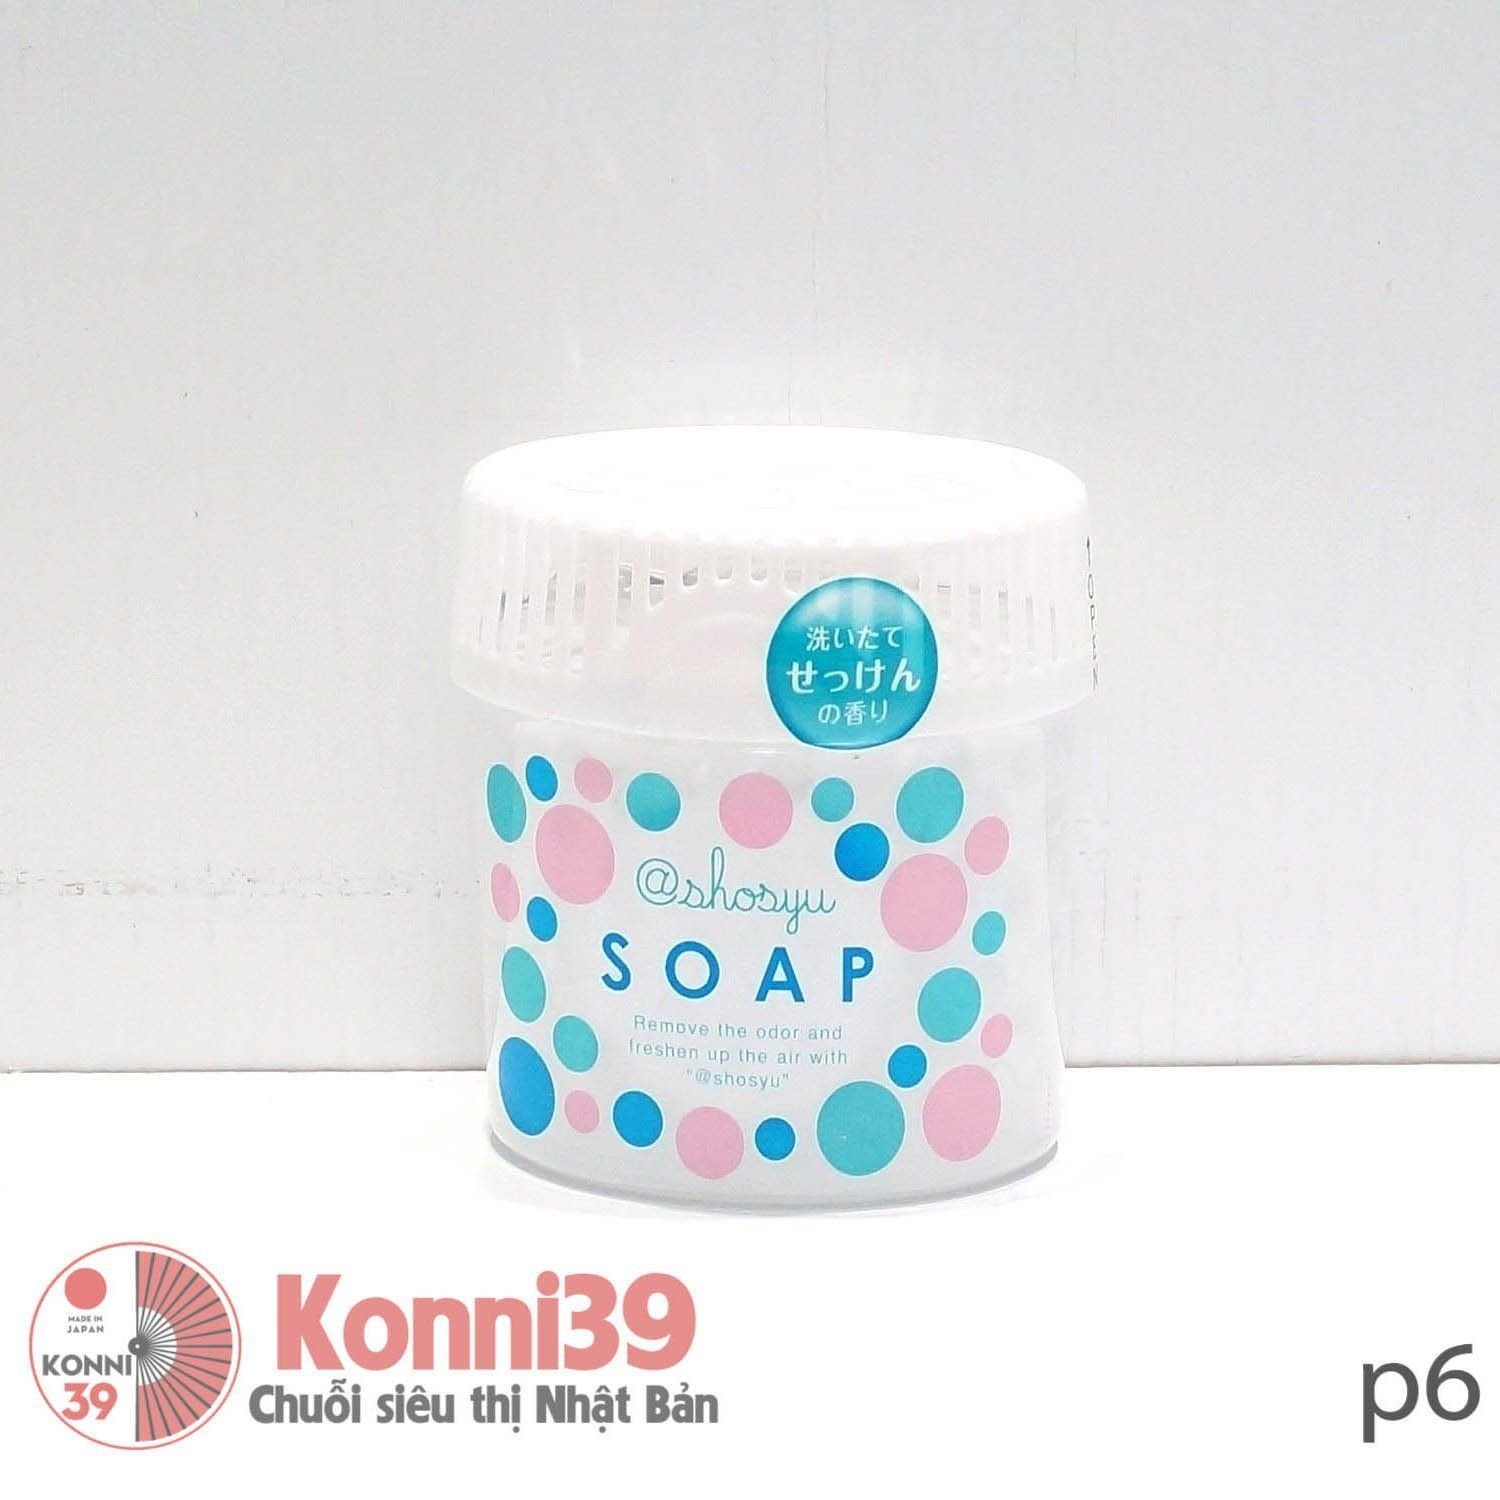 Sáp khử mùi 150g KOKUBO (soap)-Chuỗi siêu thị Nhật Bản - MADE IN JAPAN Konni39 tại Việt Nam